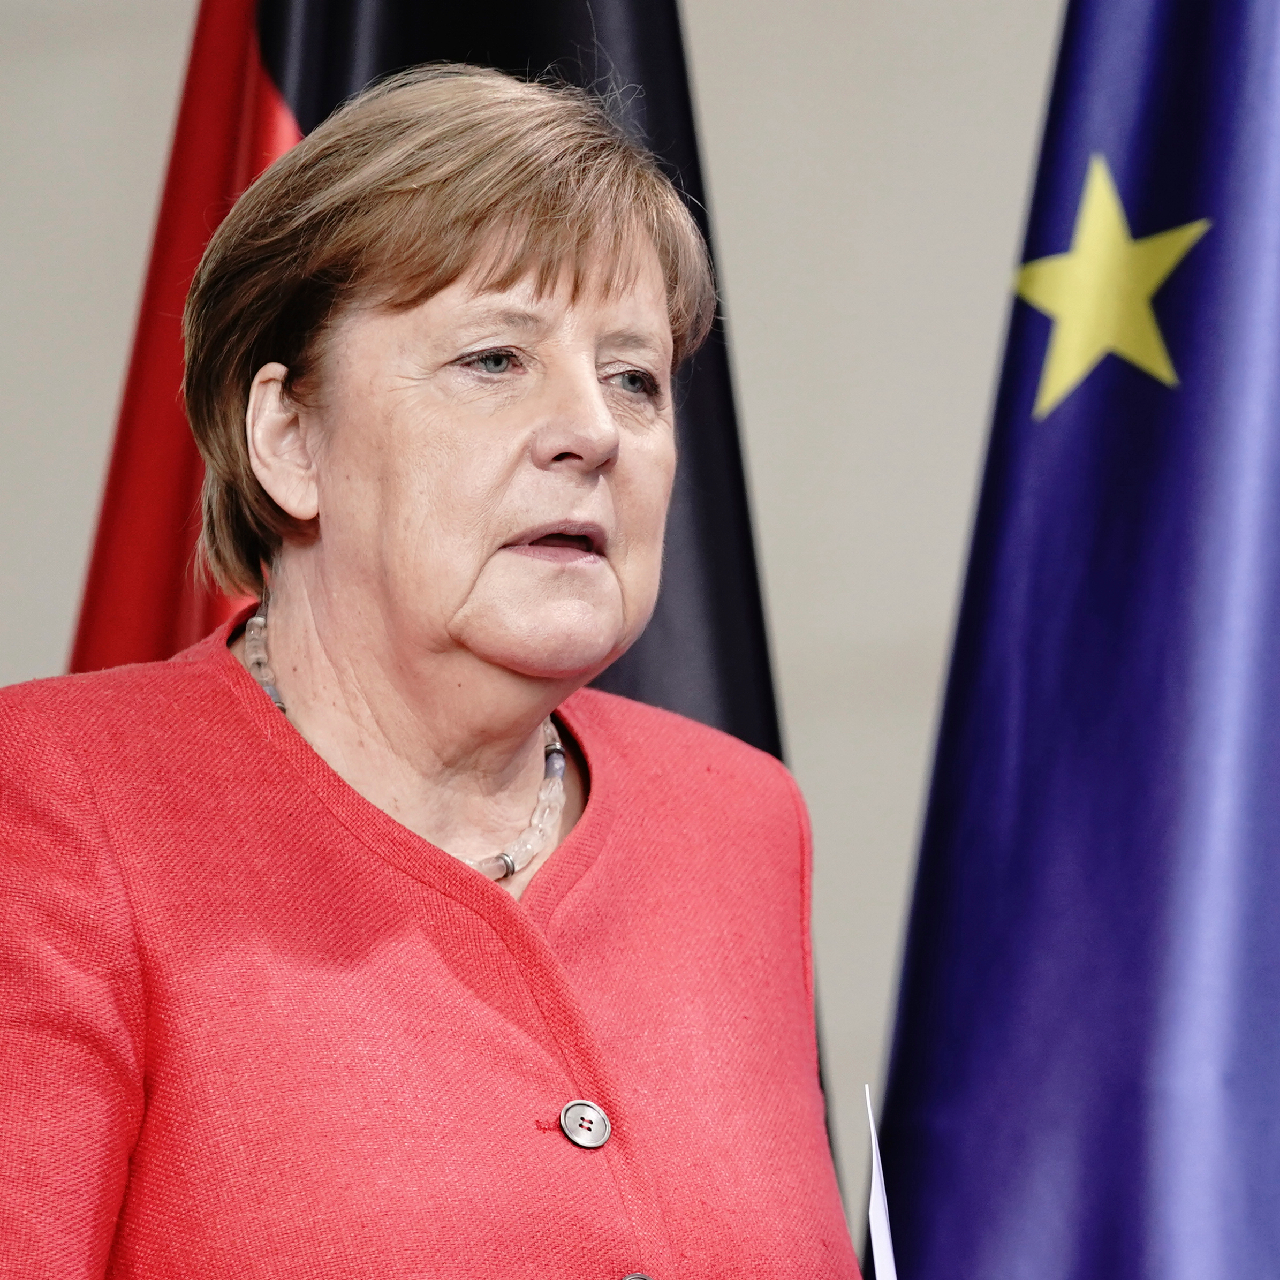 Germany's EU Council presidency: Angela Merkel's top five priorities - CGTN